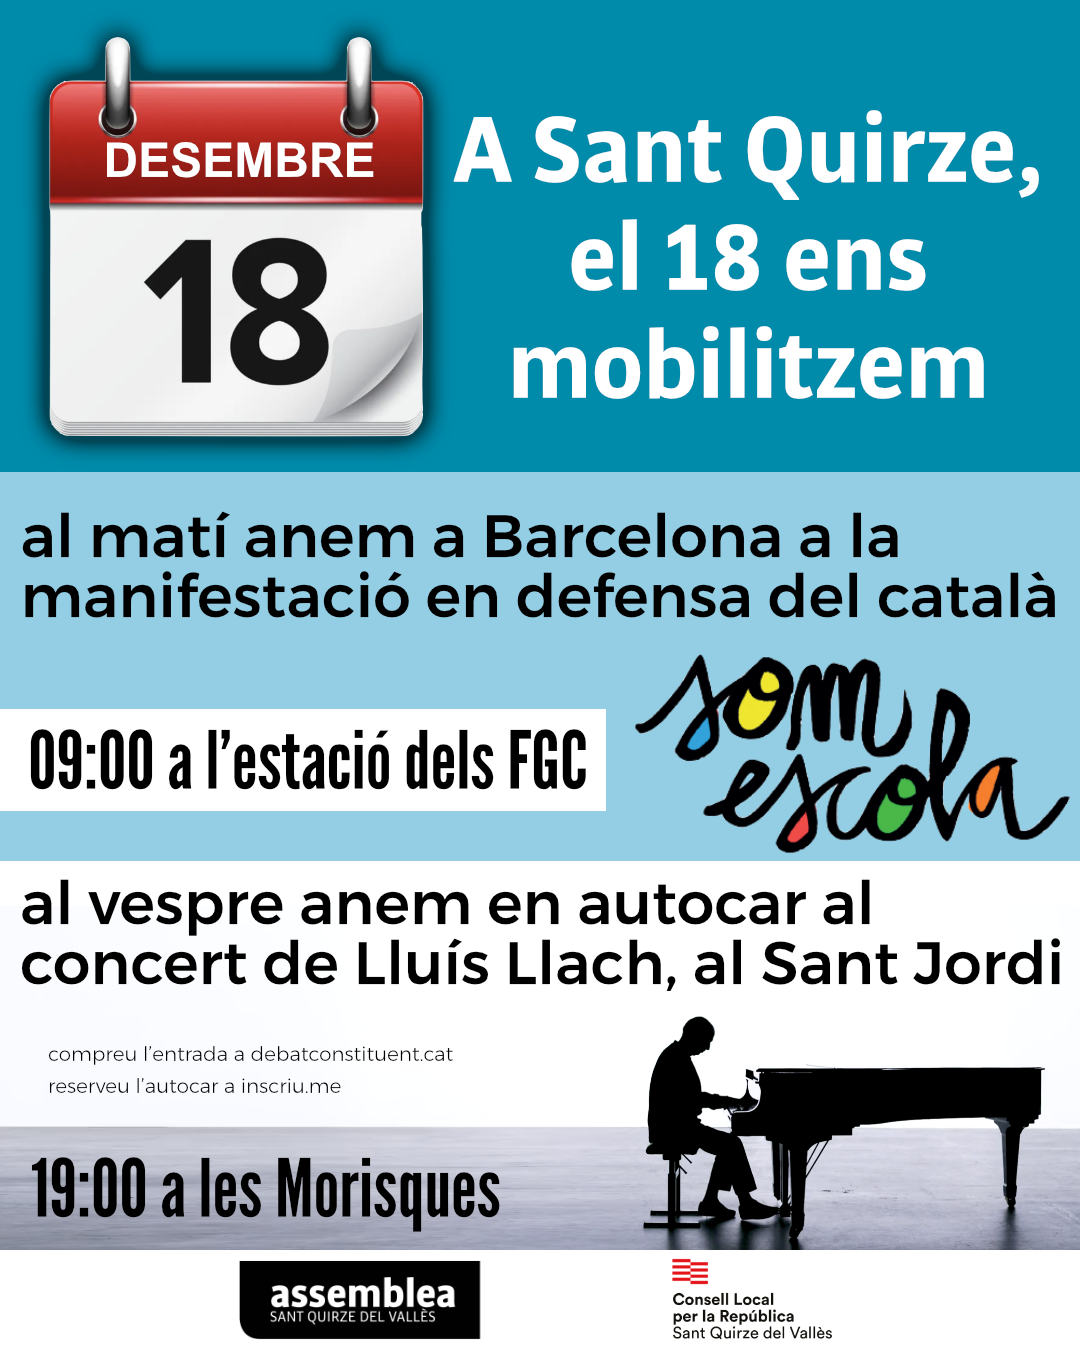 El 18 de desembre, Sant Quirze es mobilitza pel català i pel Debat Constituent